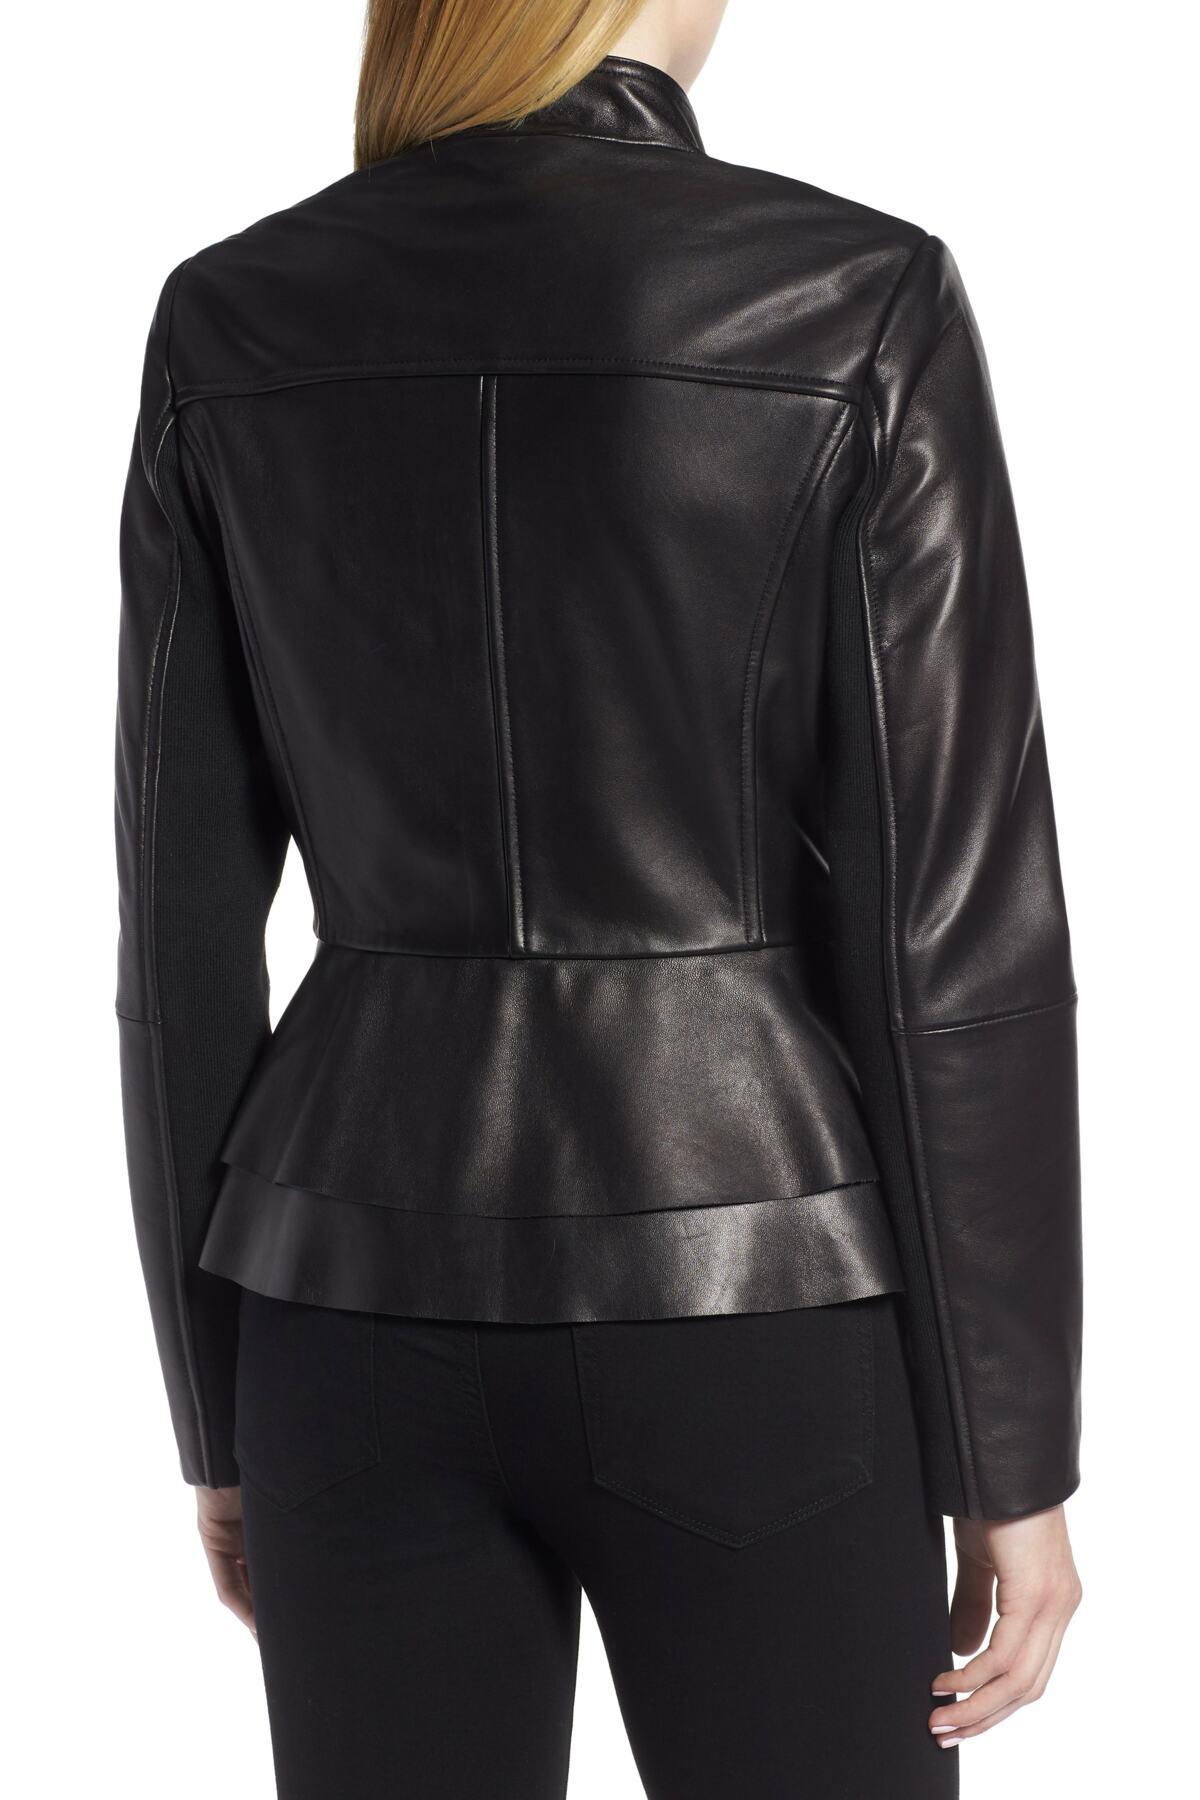 Tahari Thea Peplum Hem Leather Jacket in Black - Lyst